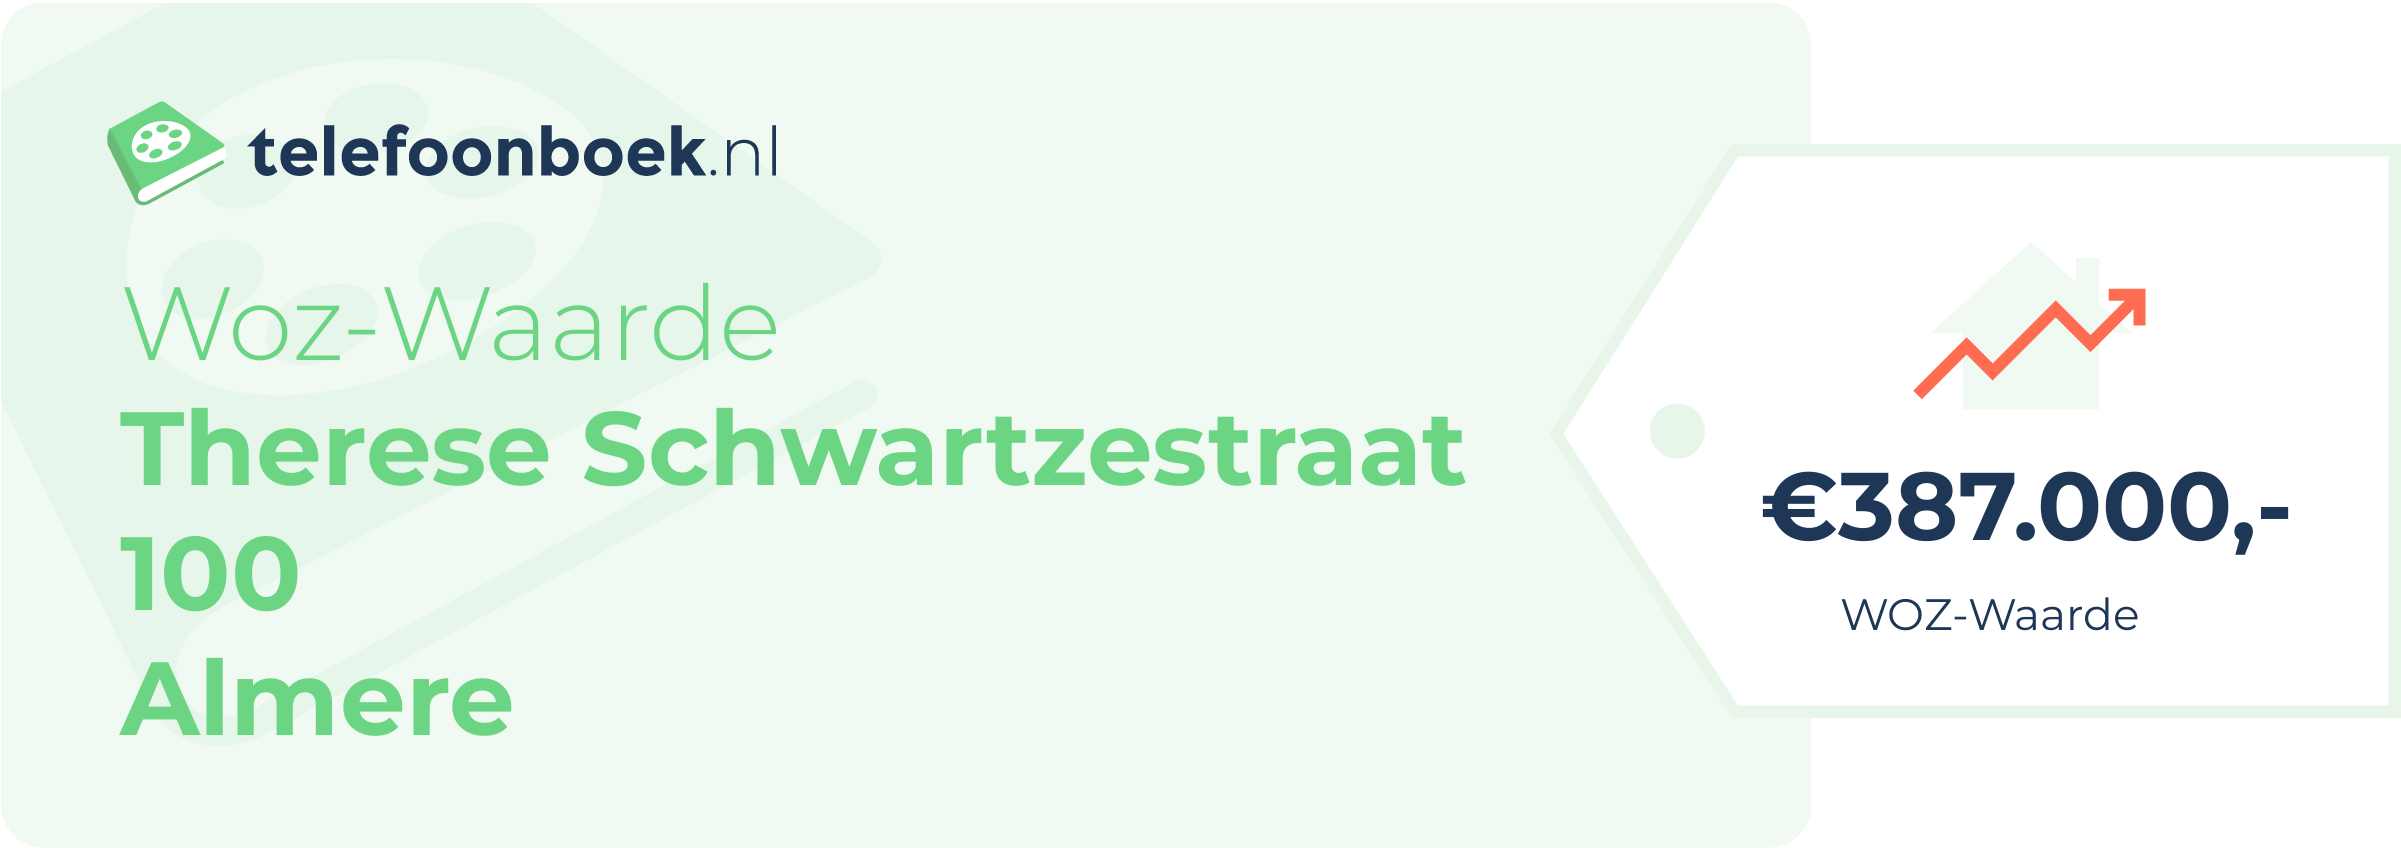 WOZ-waarde Therese Schwartzestraat 100 Almere